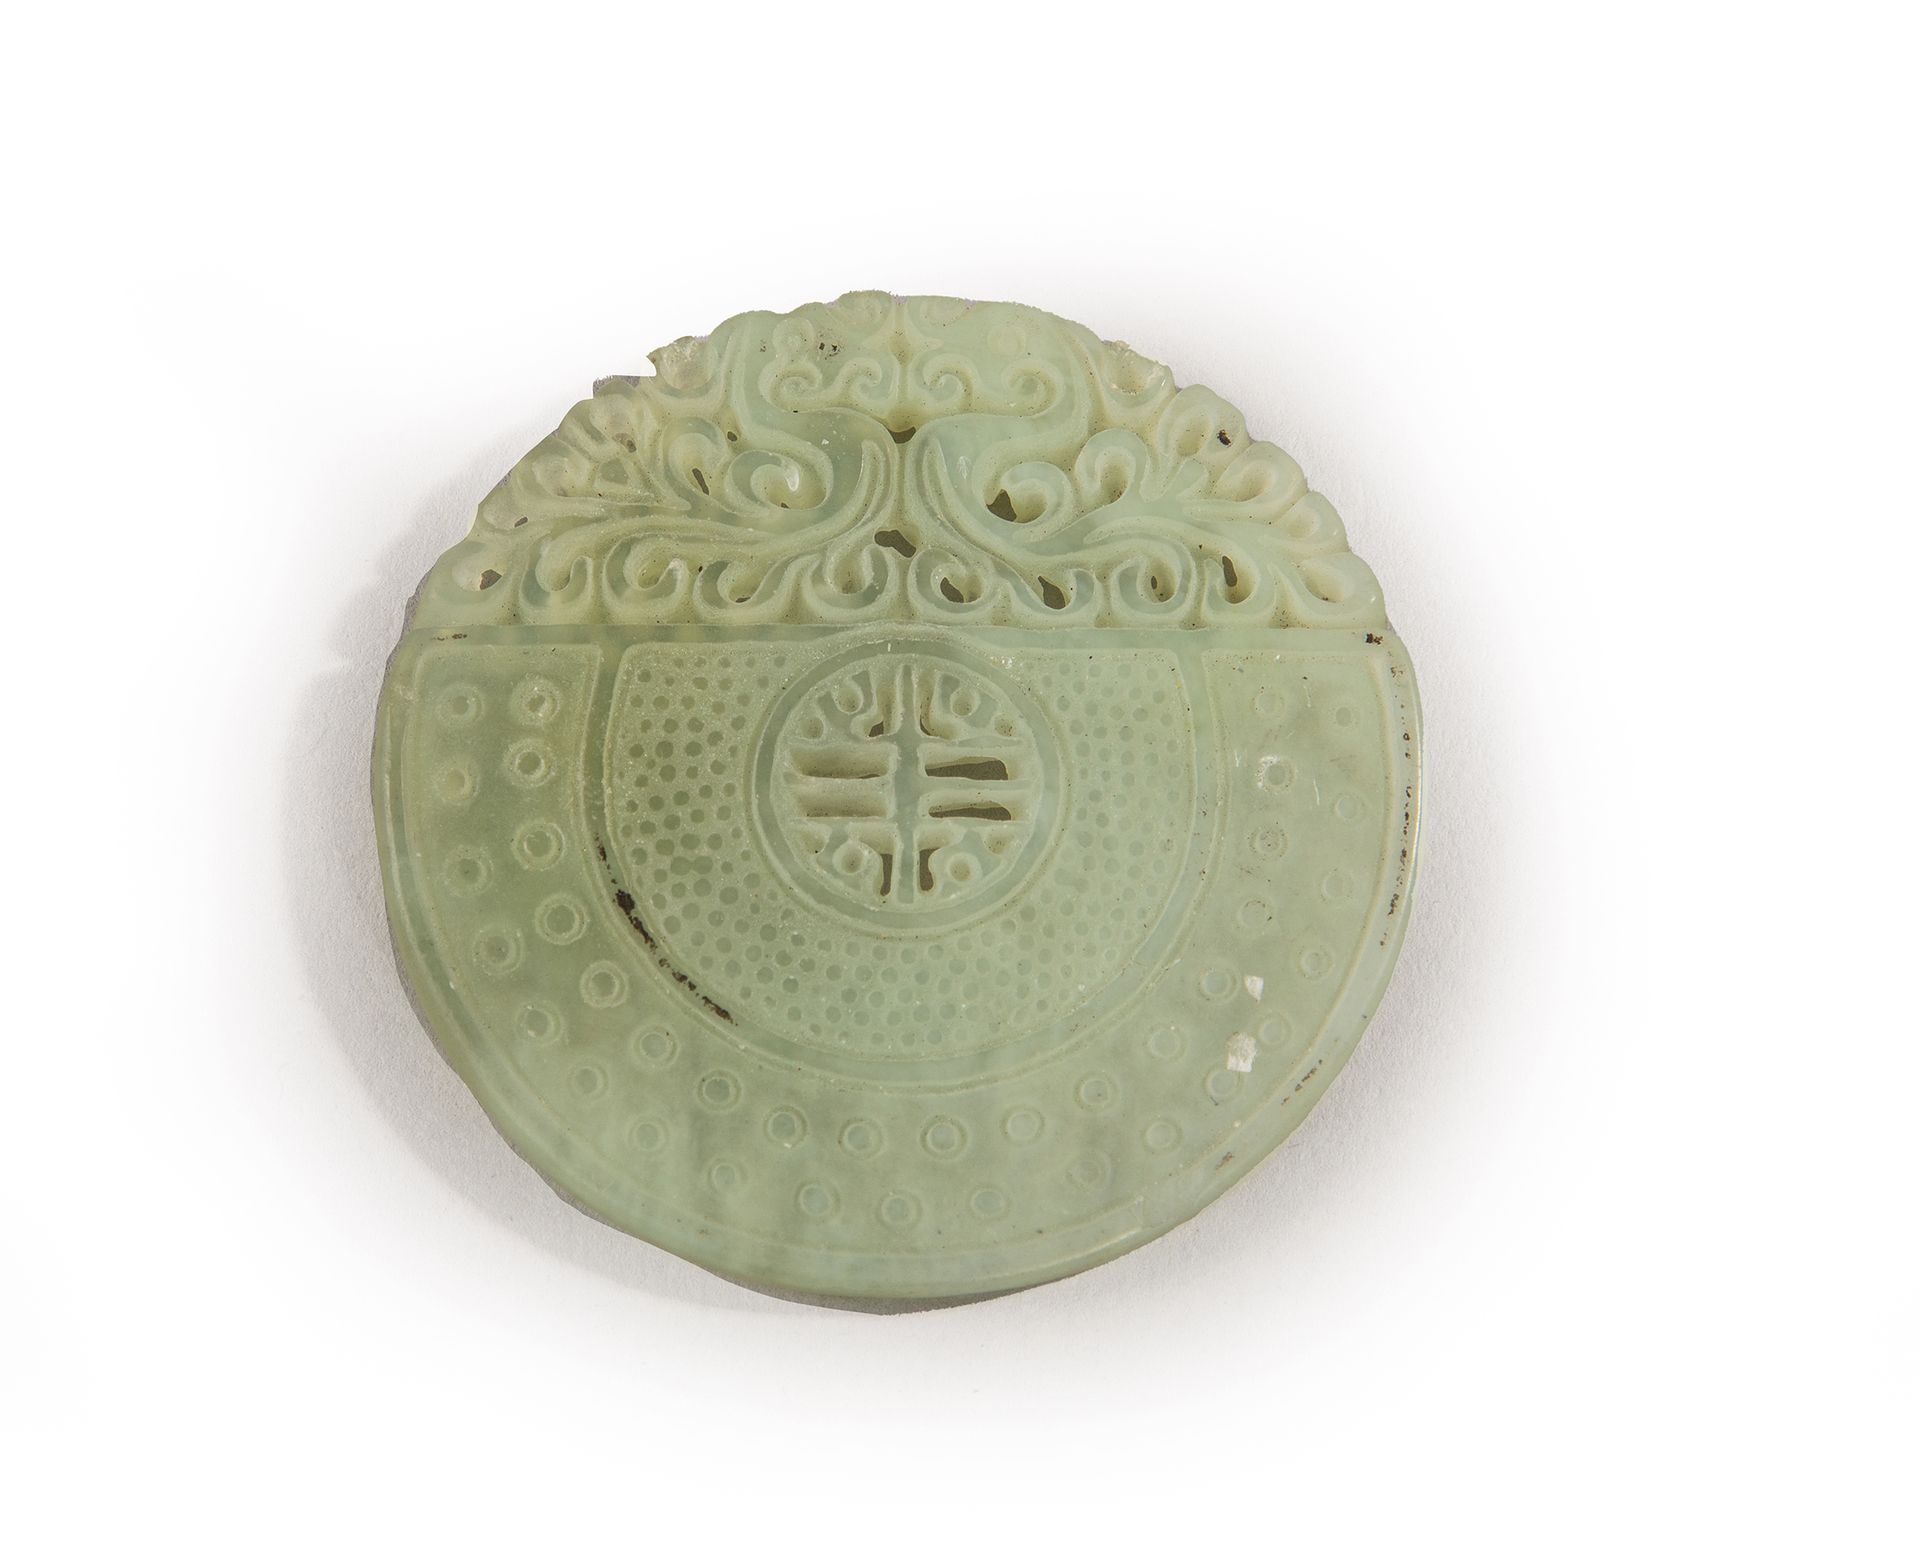 Null 
Colgante de jade, tallado.

China, finales del siglo XIX

Diámetro 5 cm